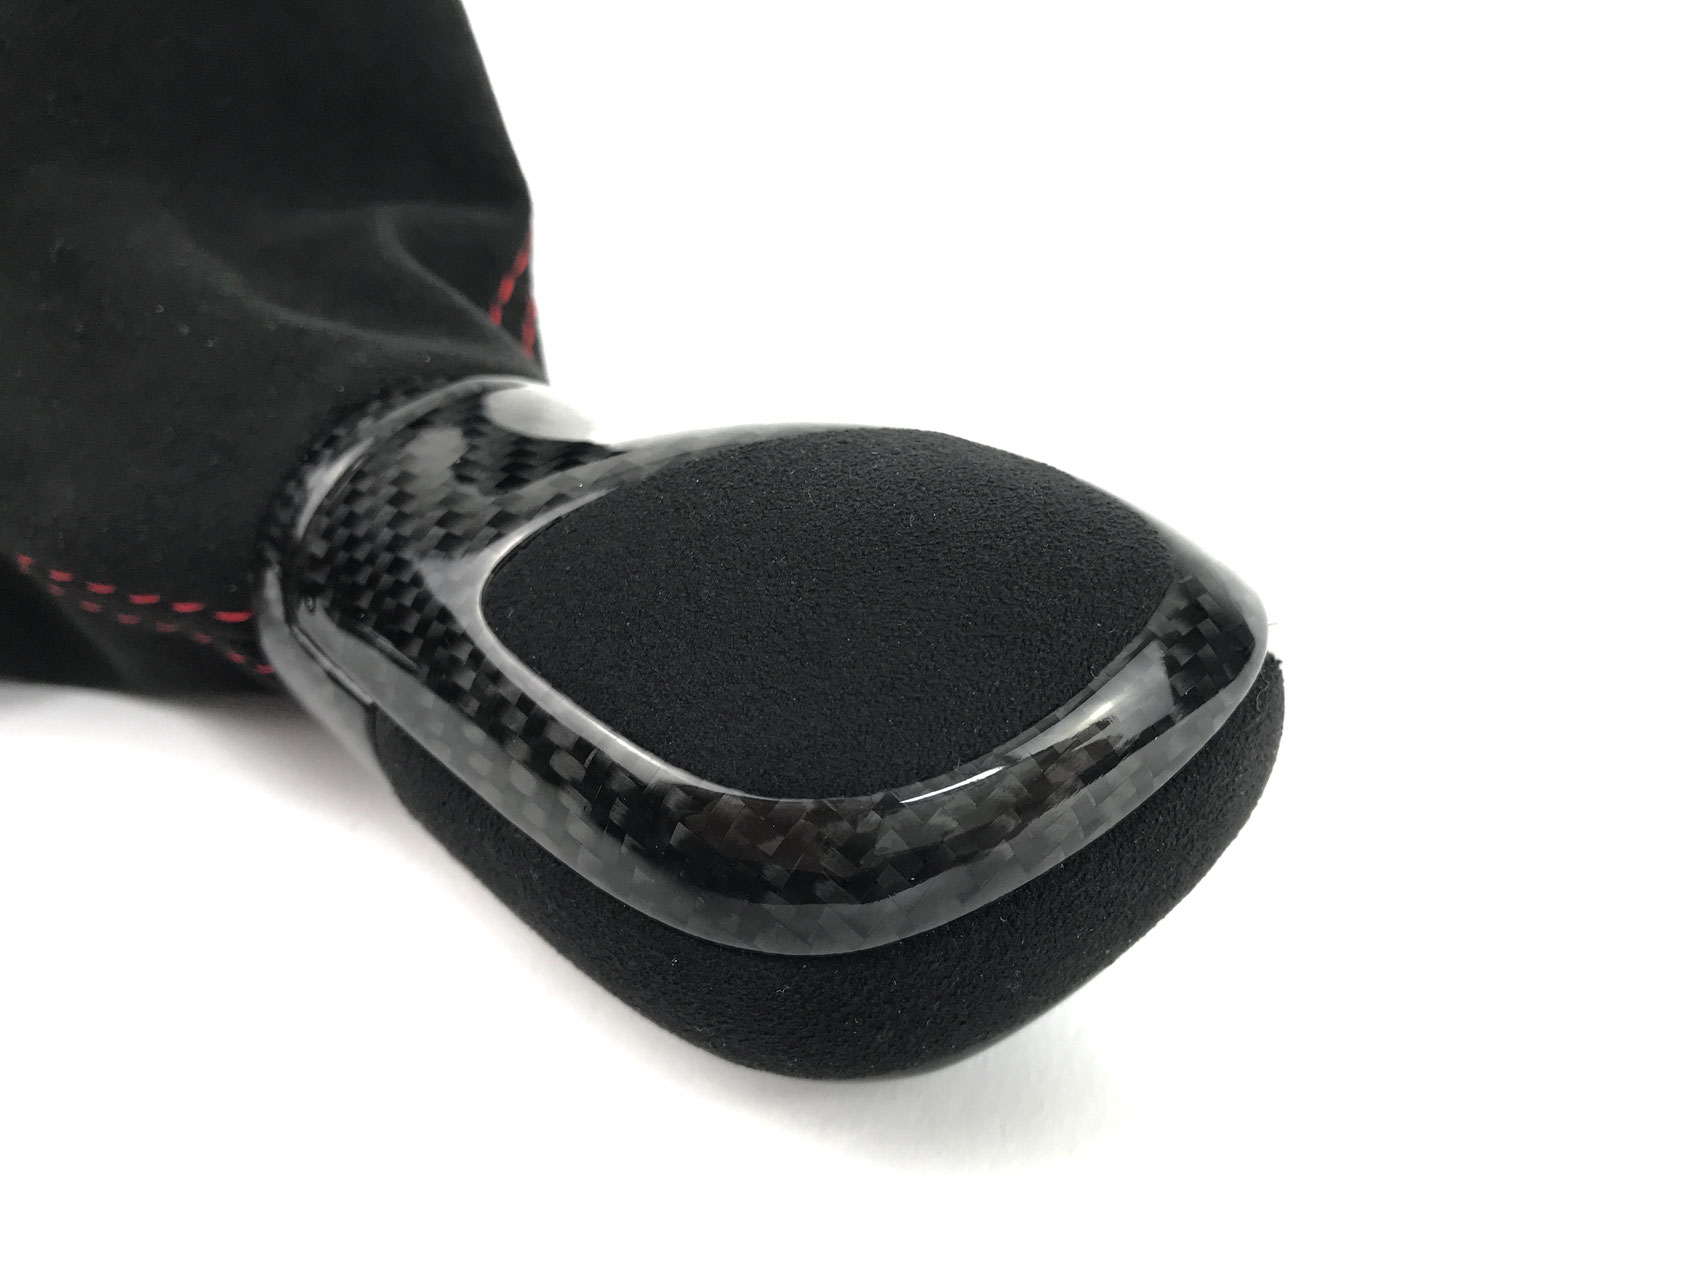 DSG Schaltknauf aus echtem Leder mit roten Nähten für Golf 7 – die